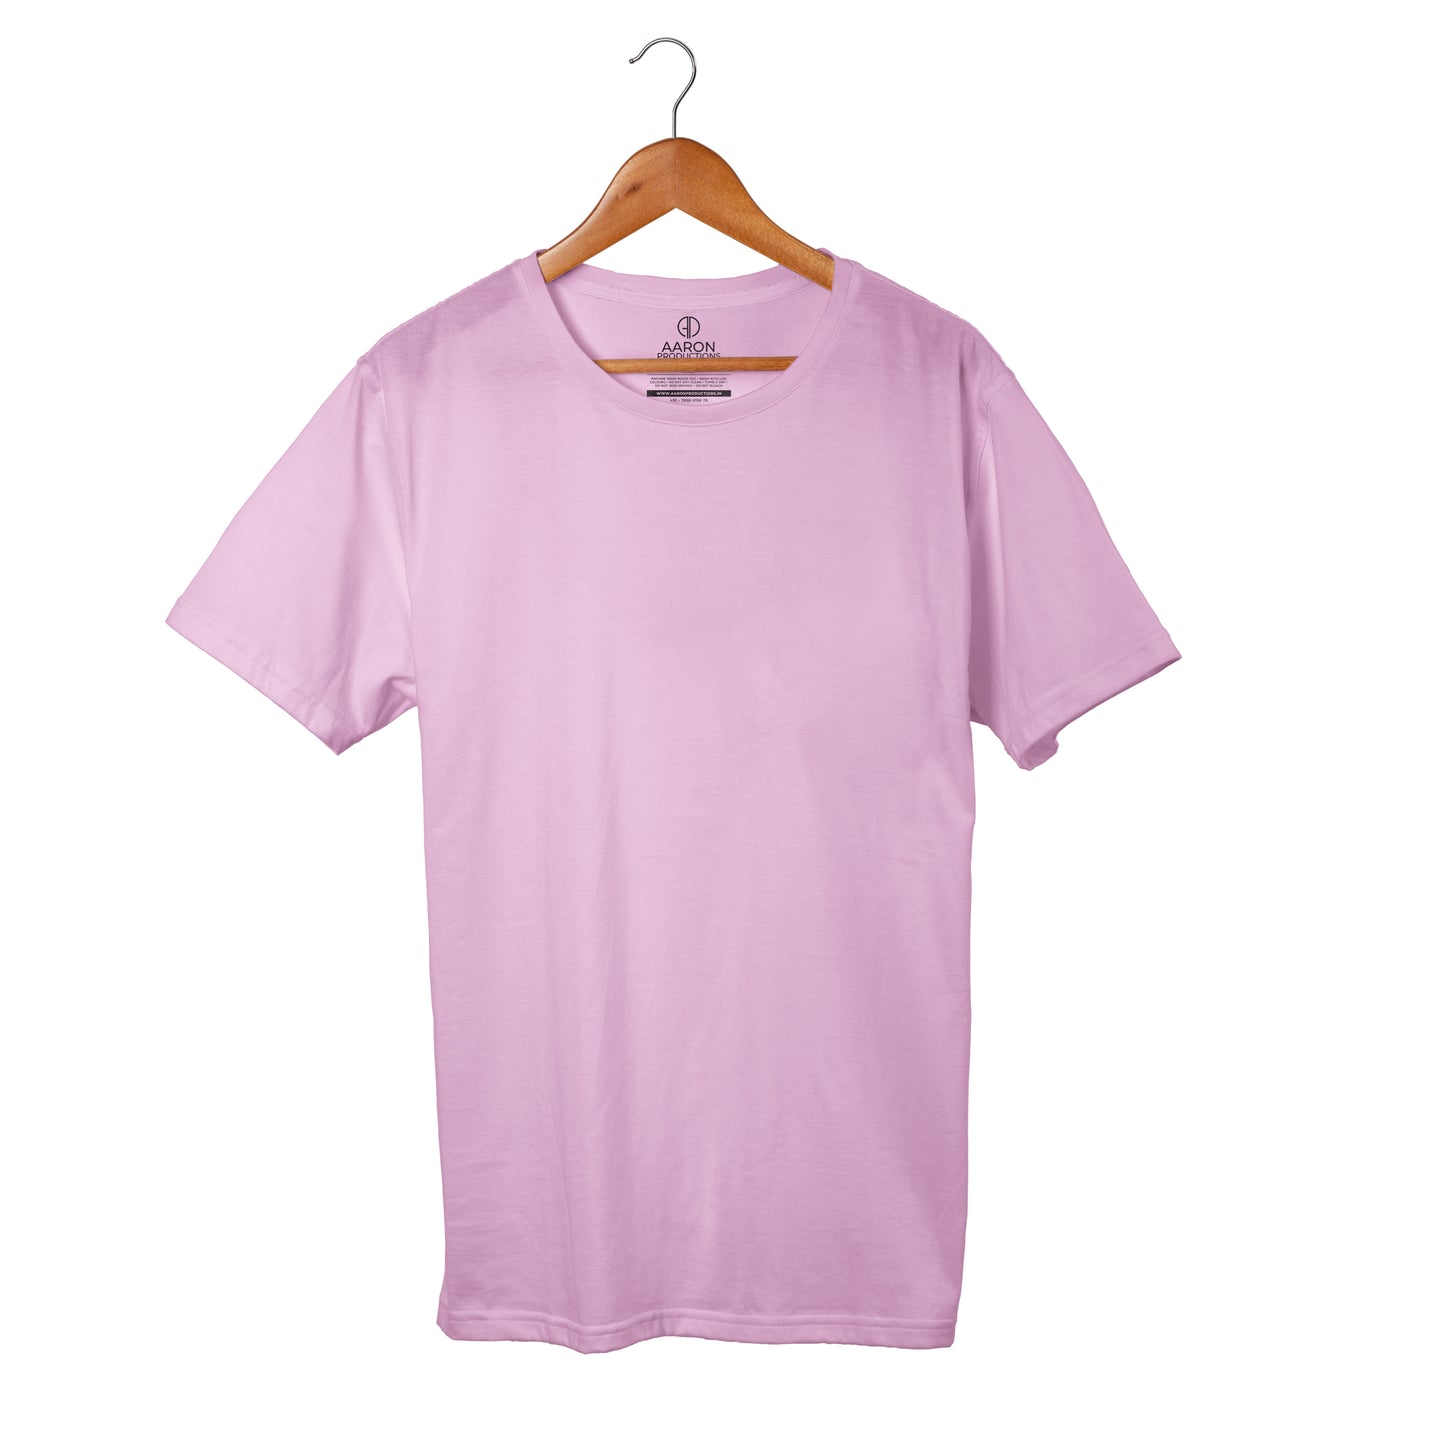 Light Baby Pink - Plain T-shirt Men